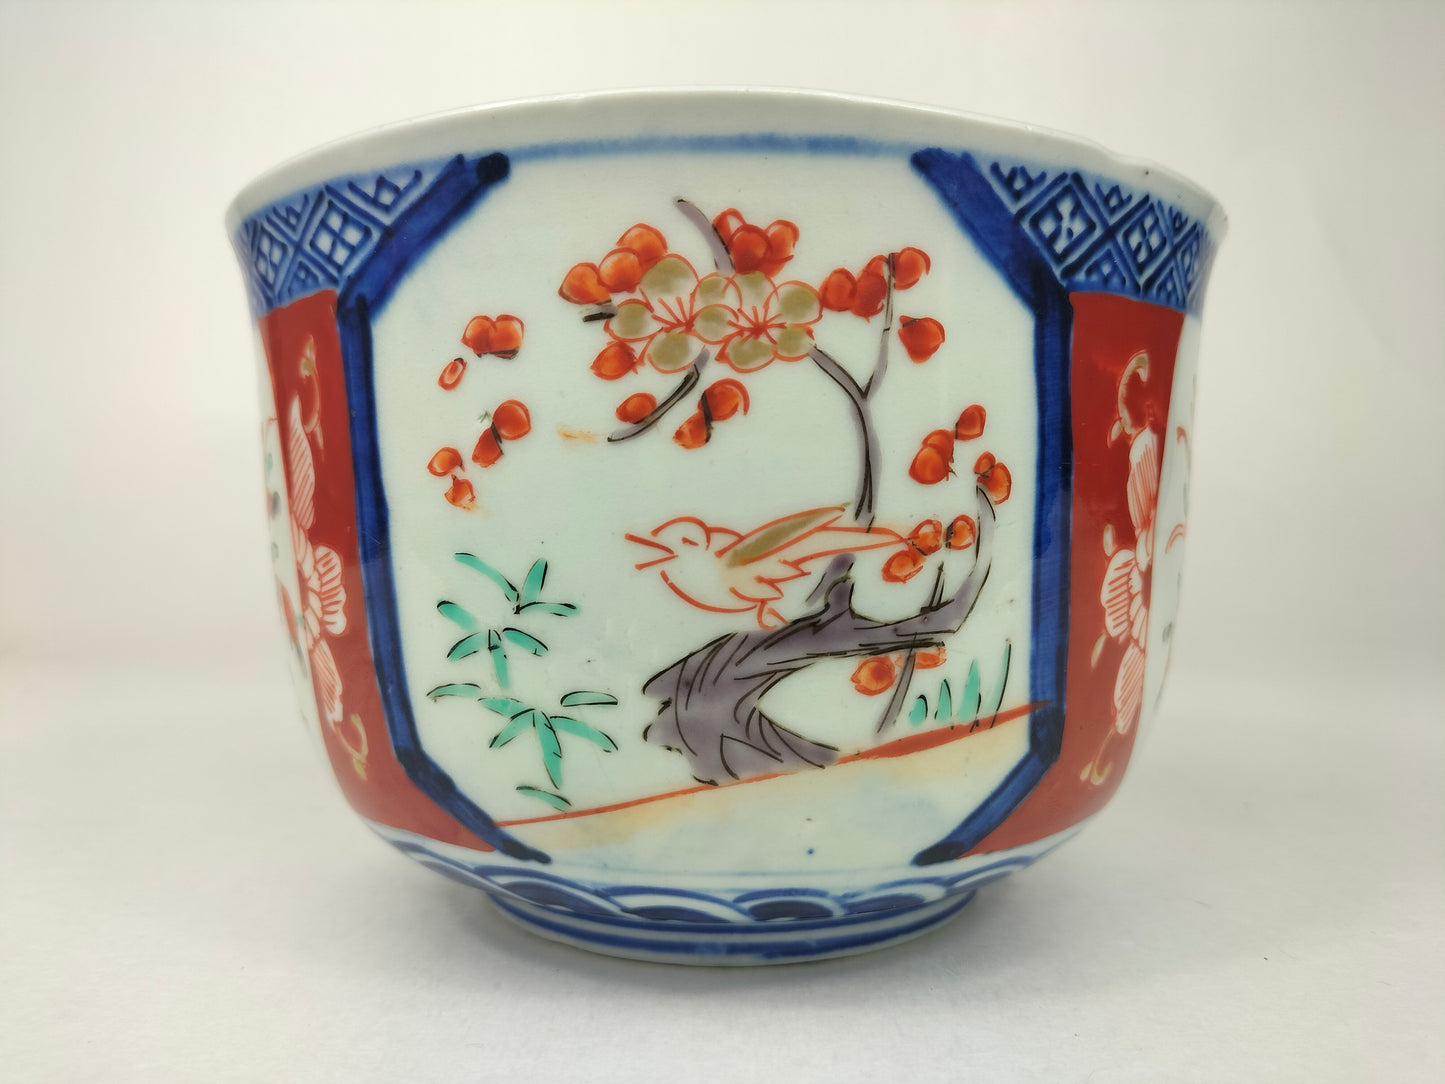 装饰有花卉图案的古董日本 imari 碗 // 明治时期 - 19 世纪